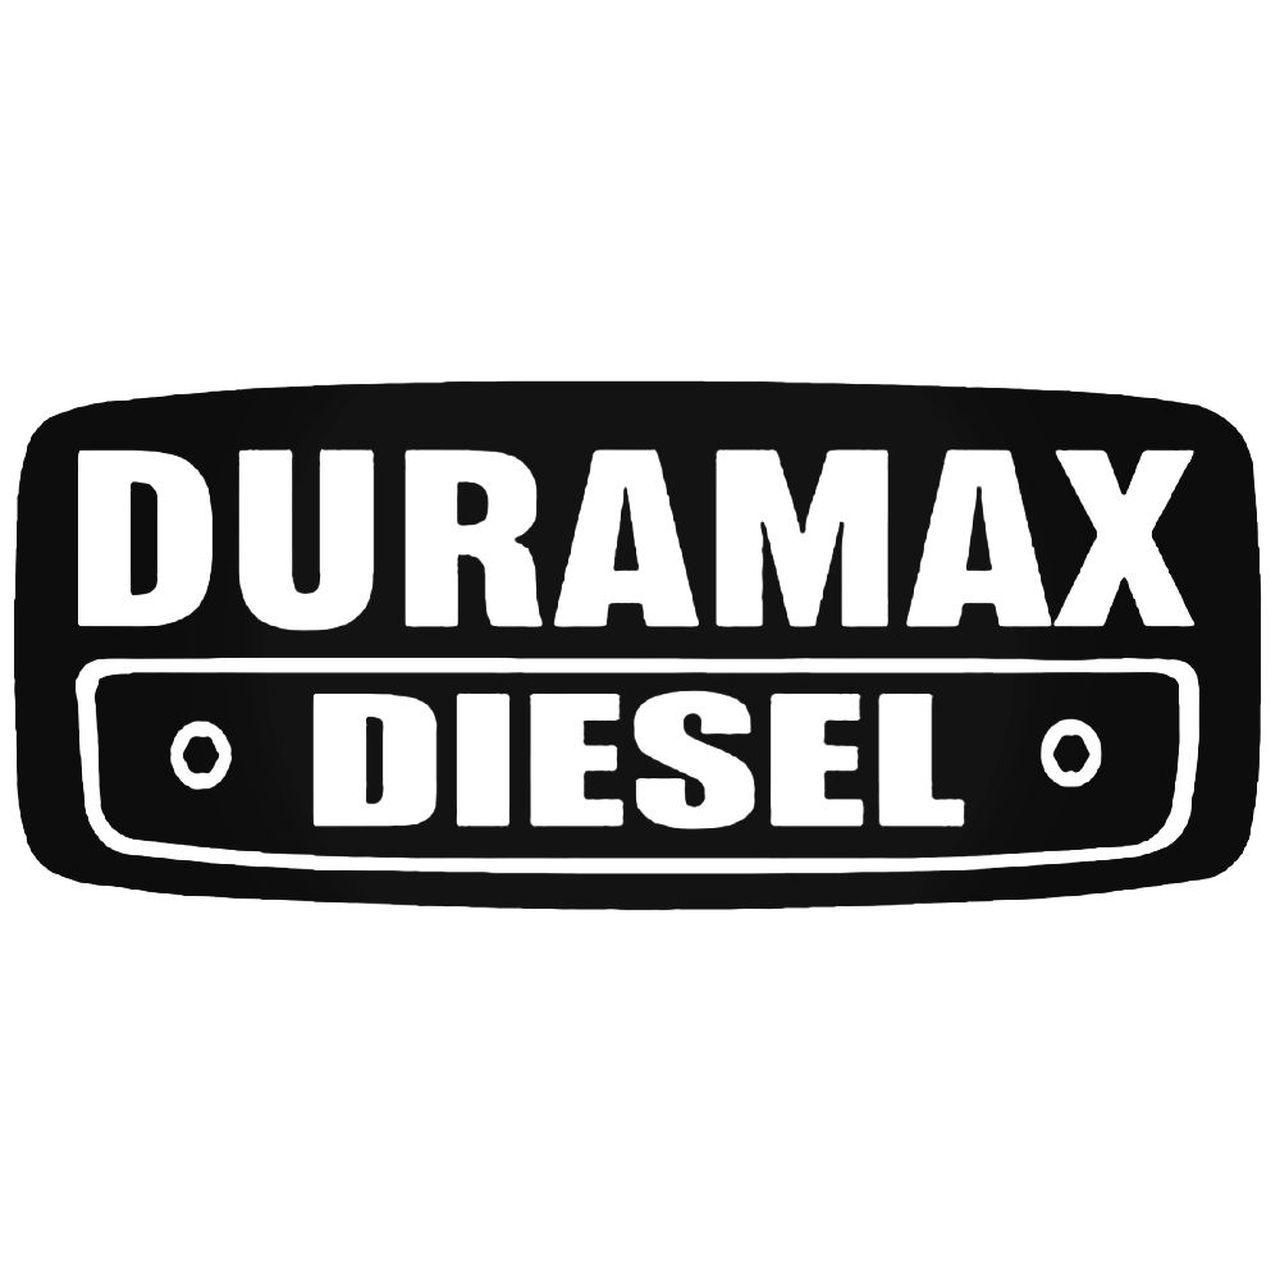 Drumax Logo - Duramax Diesel 2 Decal Sticker